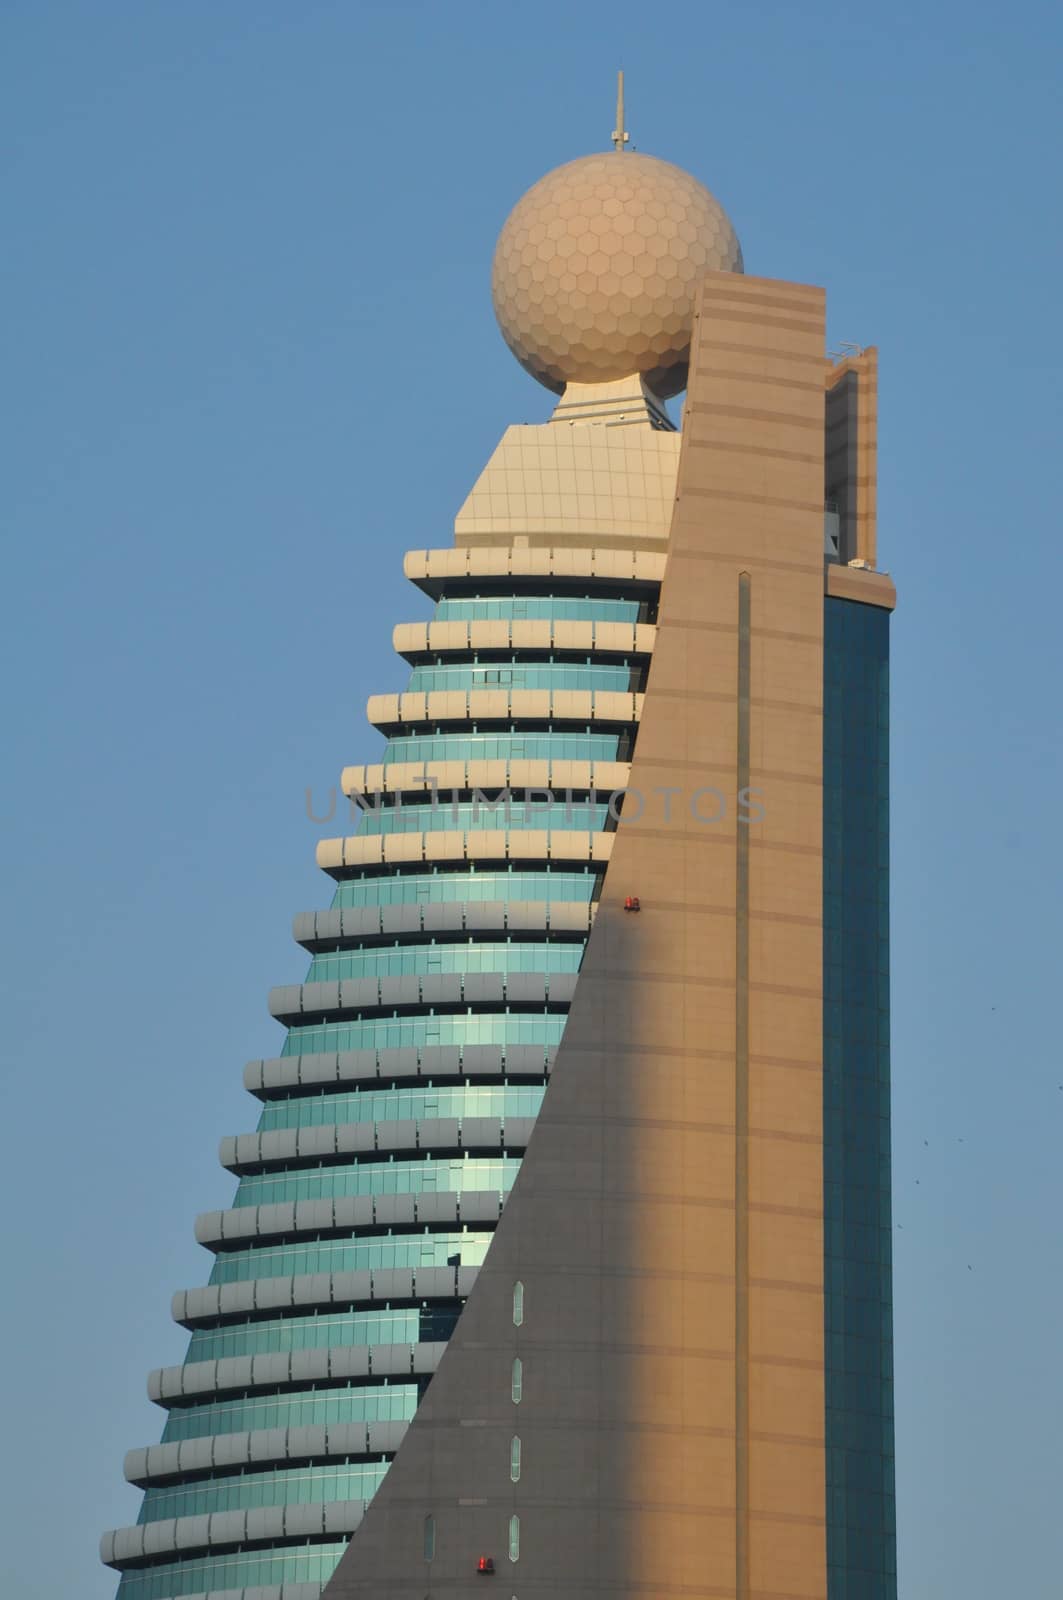 Etisalat Tower 2 in Dubai, UAE by sainaniritu